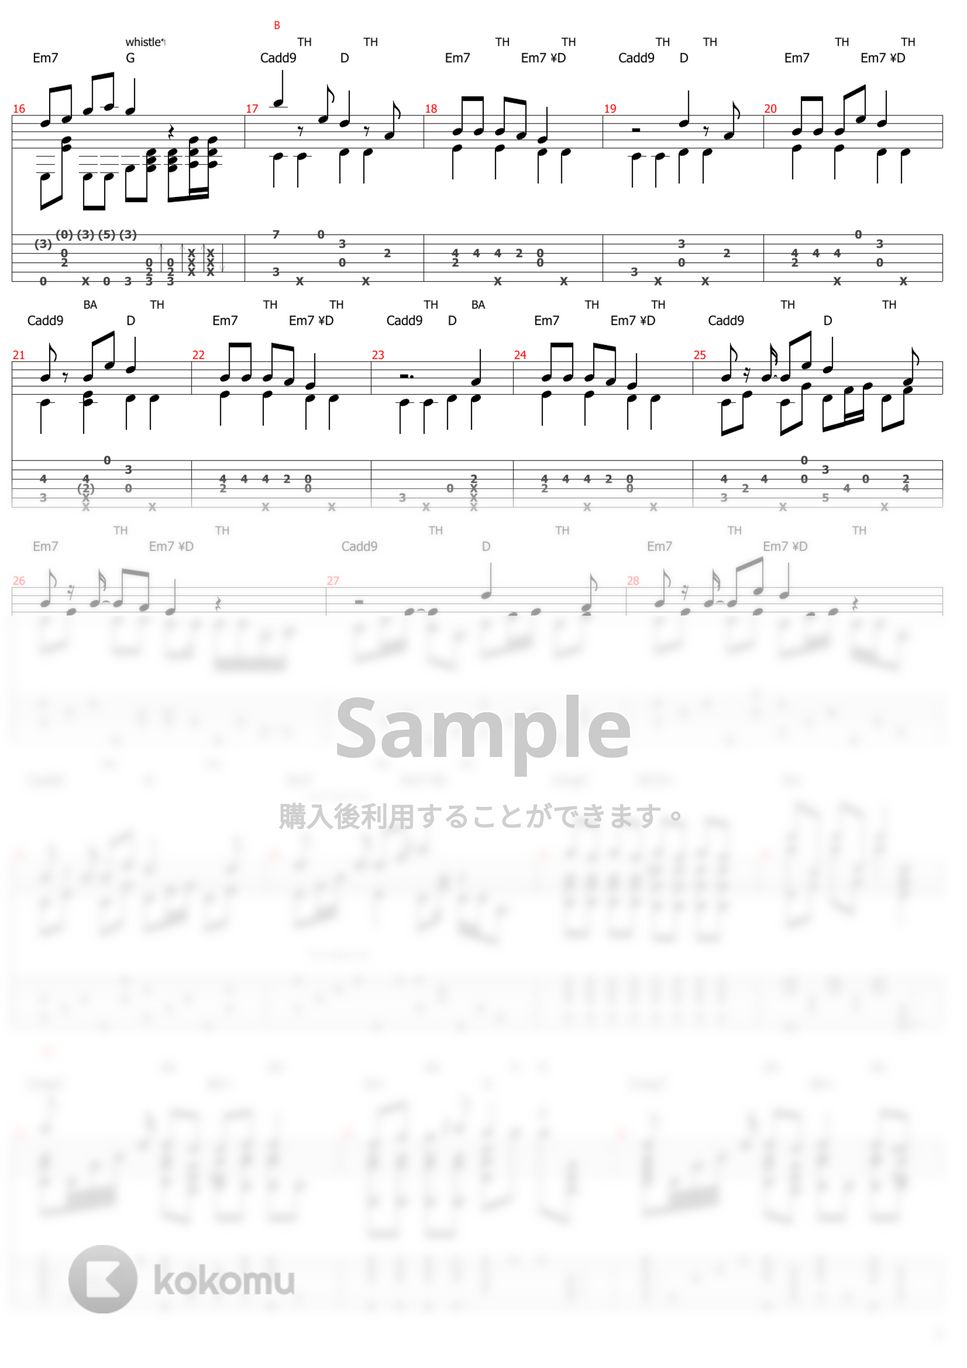 ゆこぴ - 強風オールバック (ソロギター) by おさむらいさん